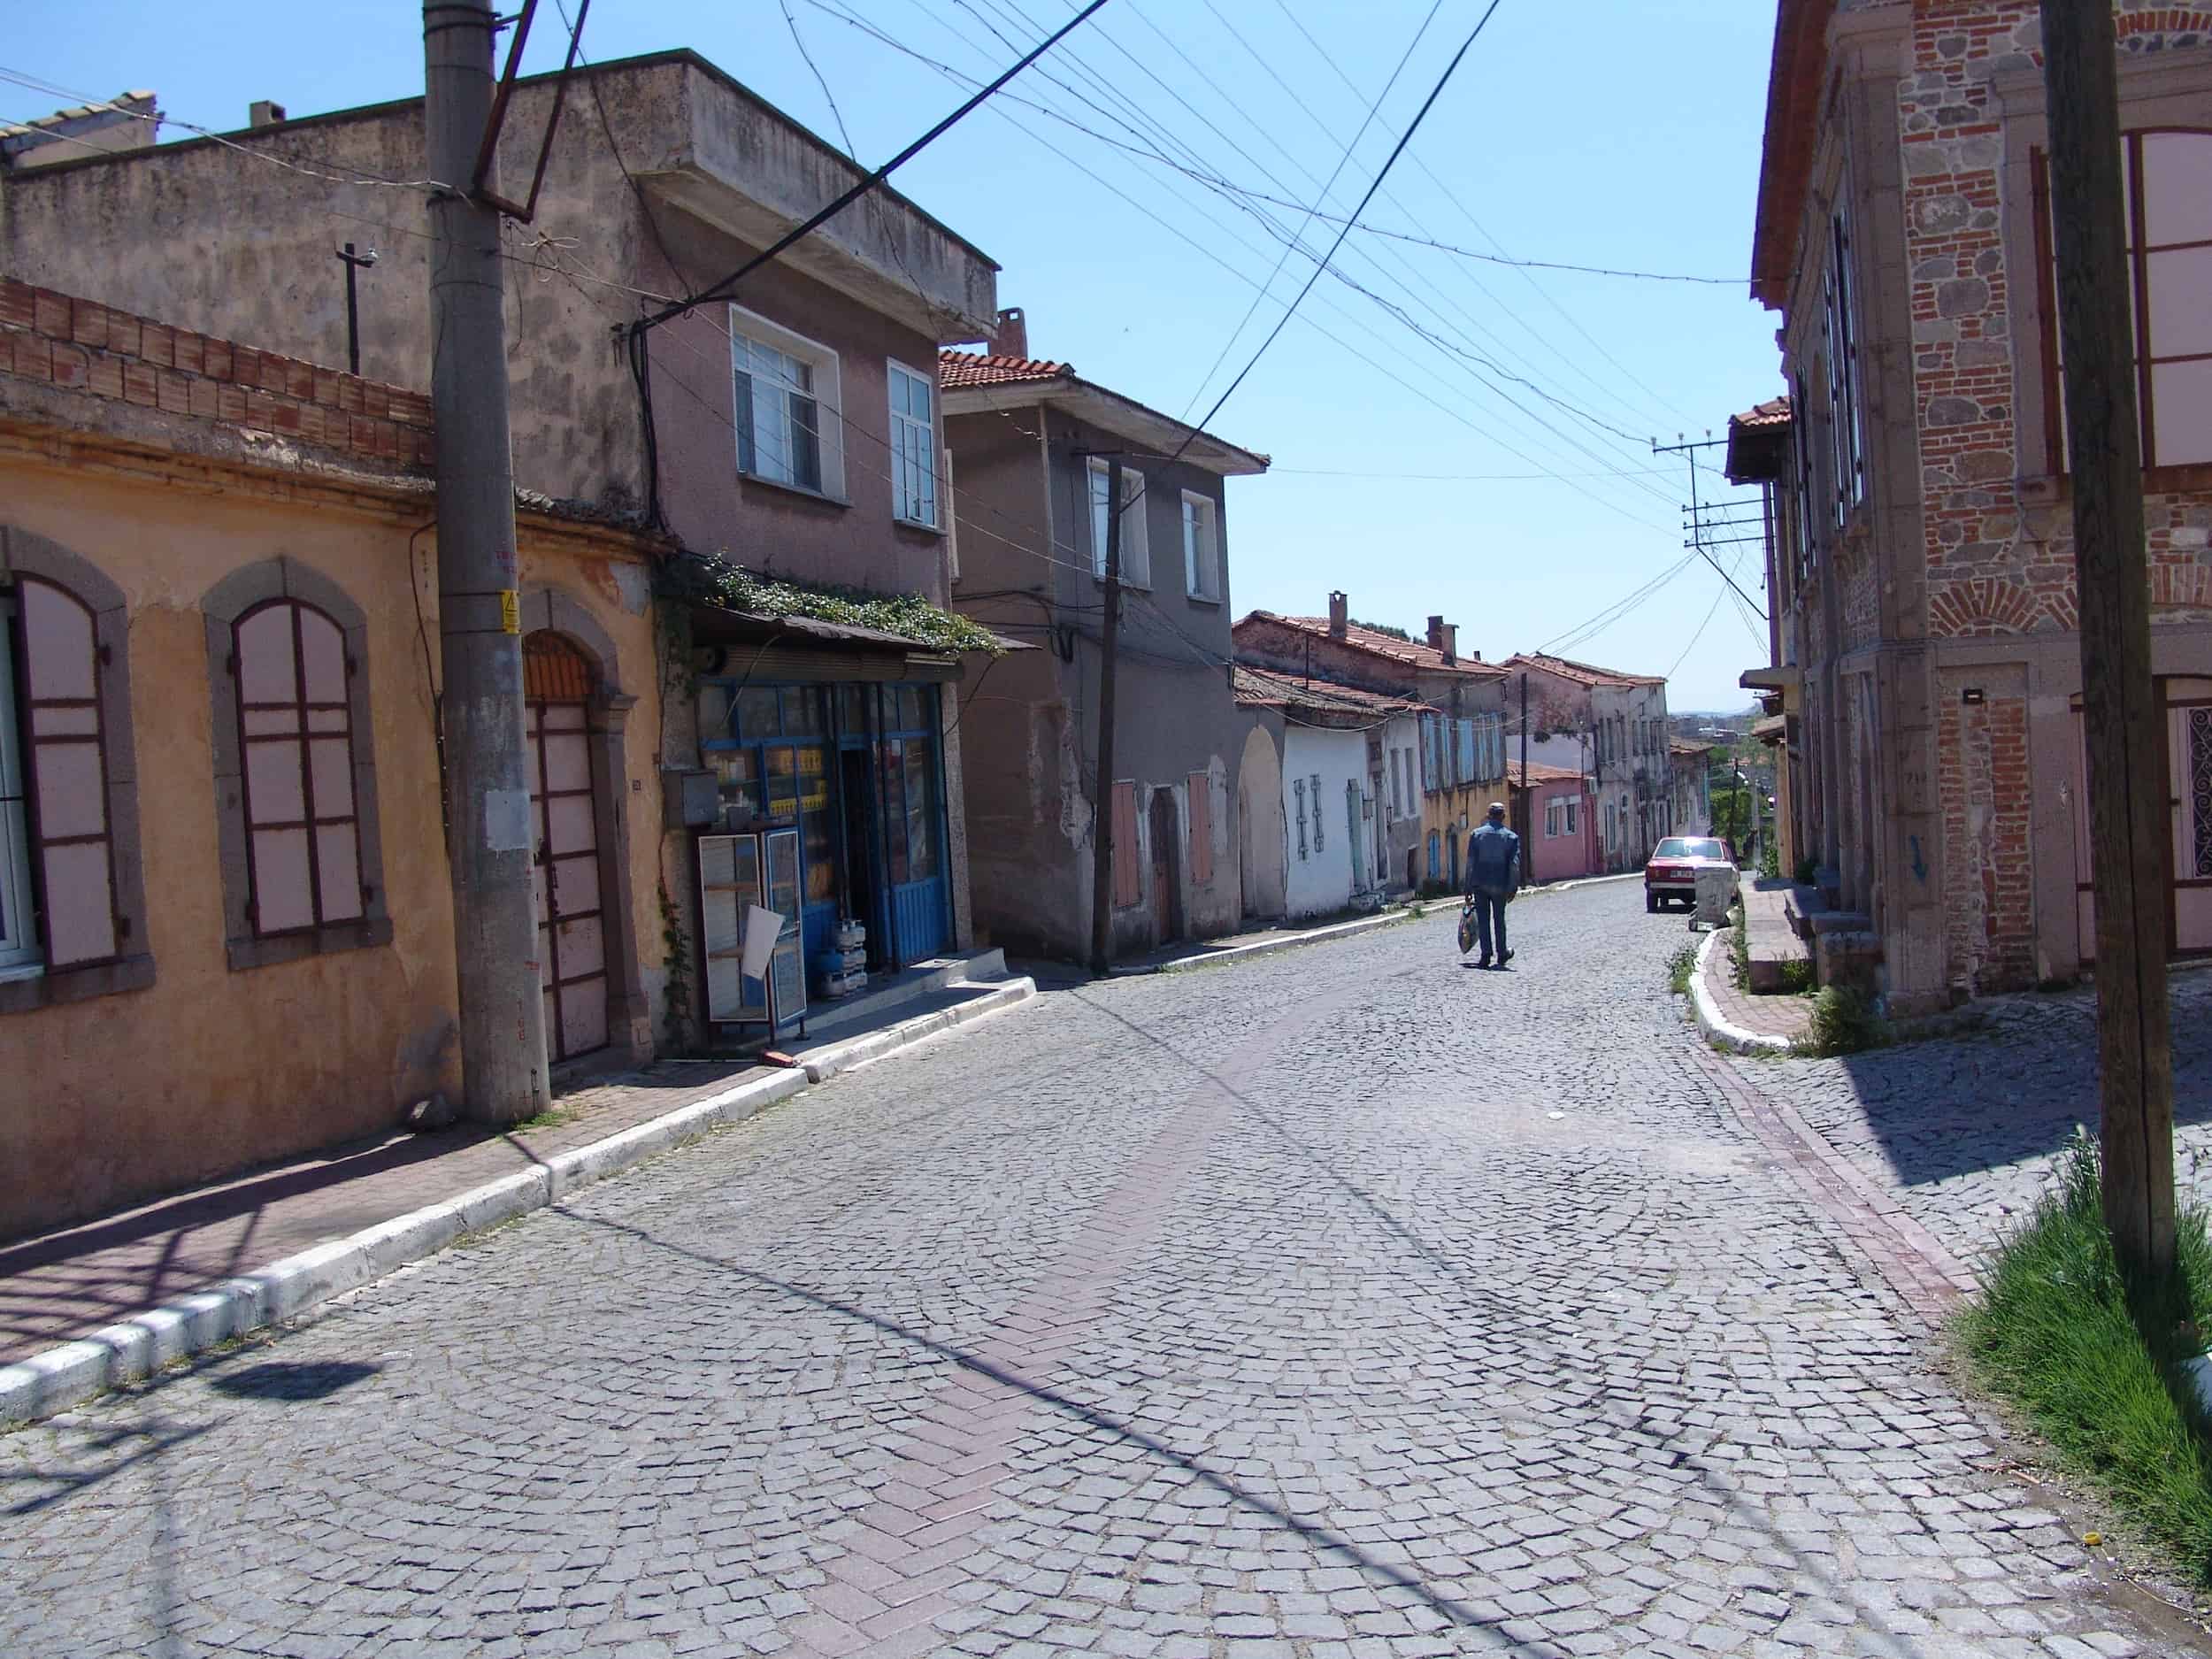 A street in Kurtuluş in Bergama, Turkey